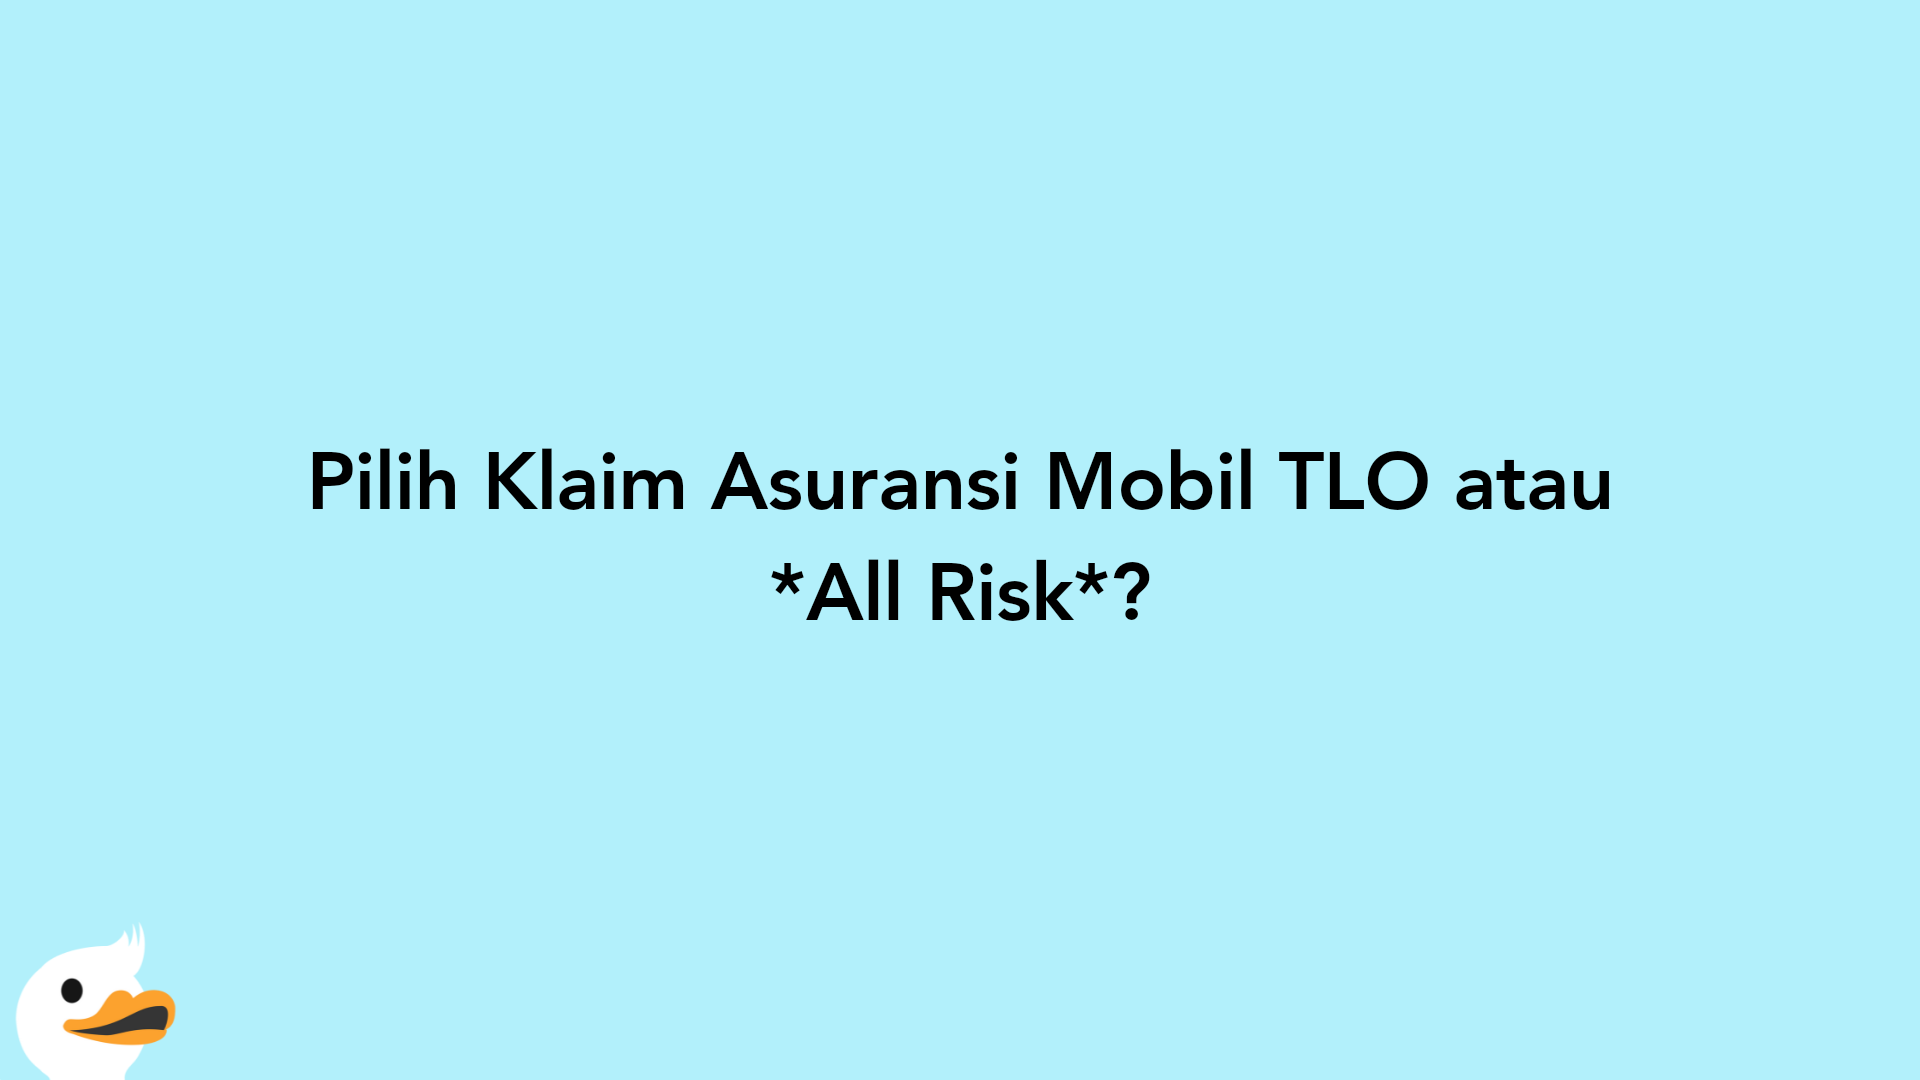 Pilih Klaim Asuransi Mobil TLO atau All Risk?